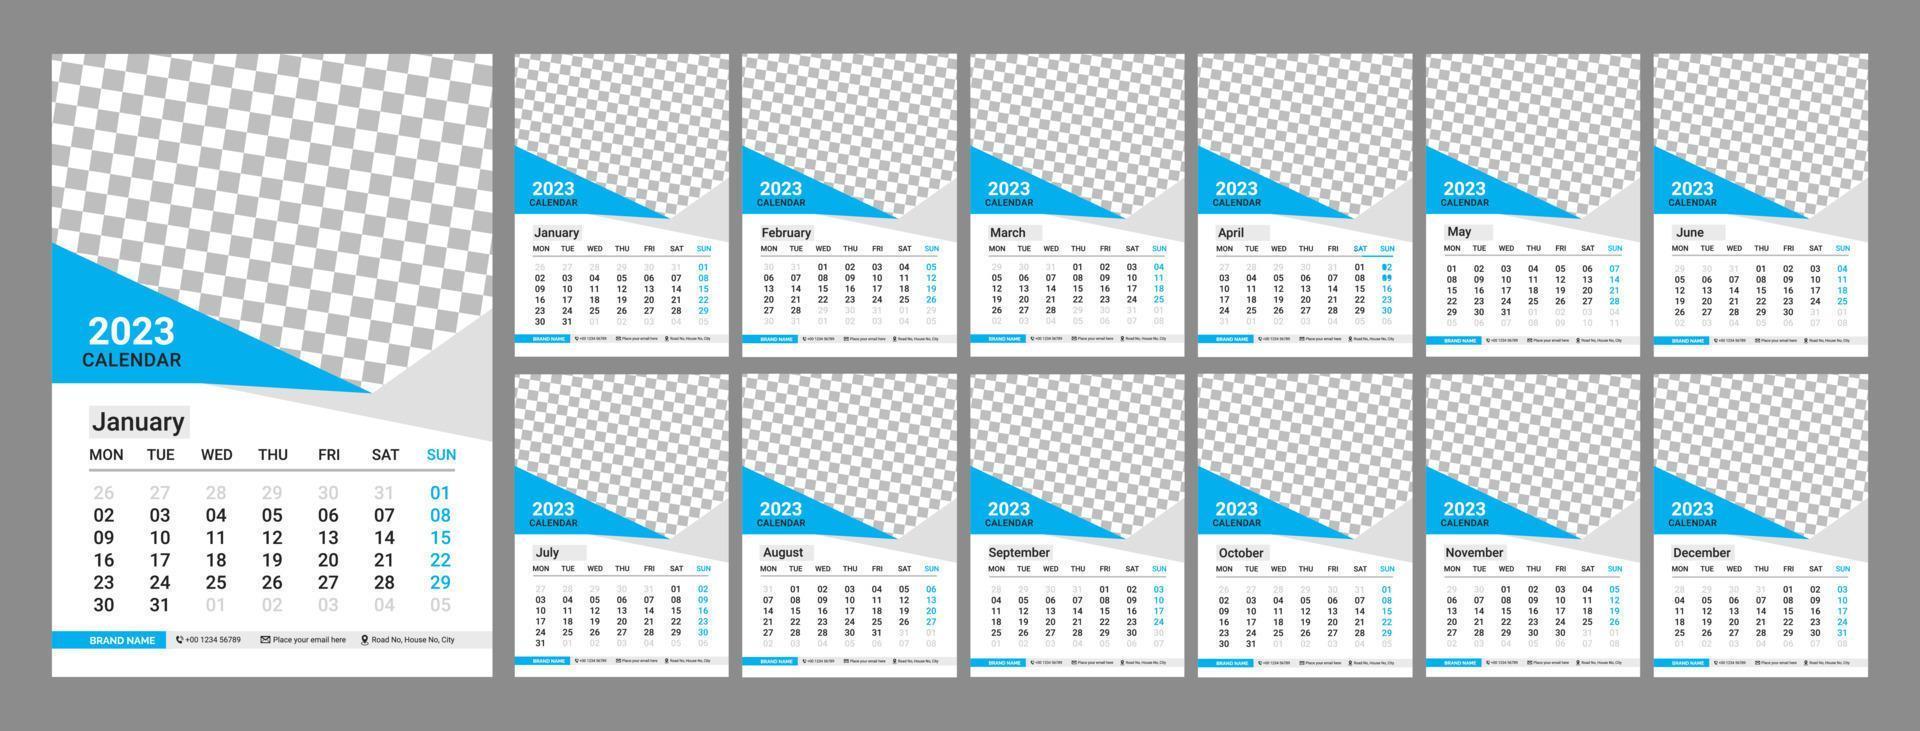 vägg kalender desing 2023. en gång i månaden kalander 2023. 12 månader. redigerbar kalender sida mall vektor